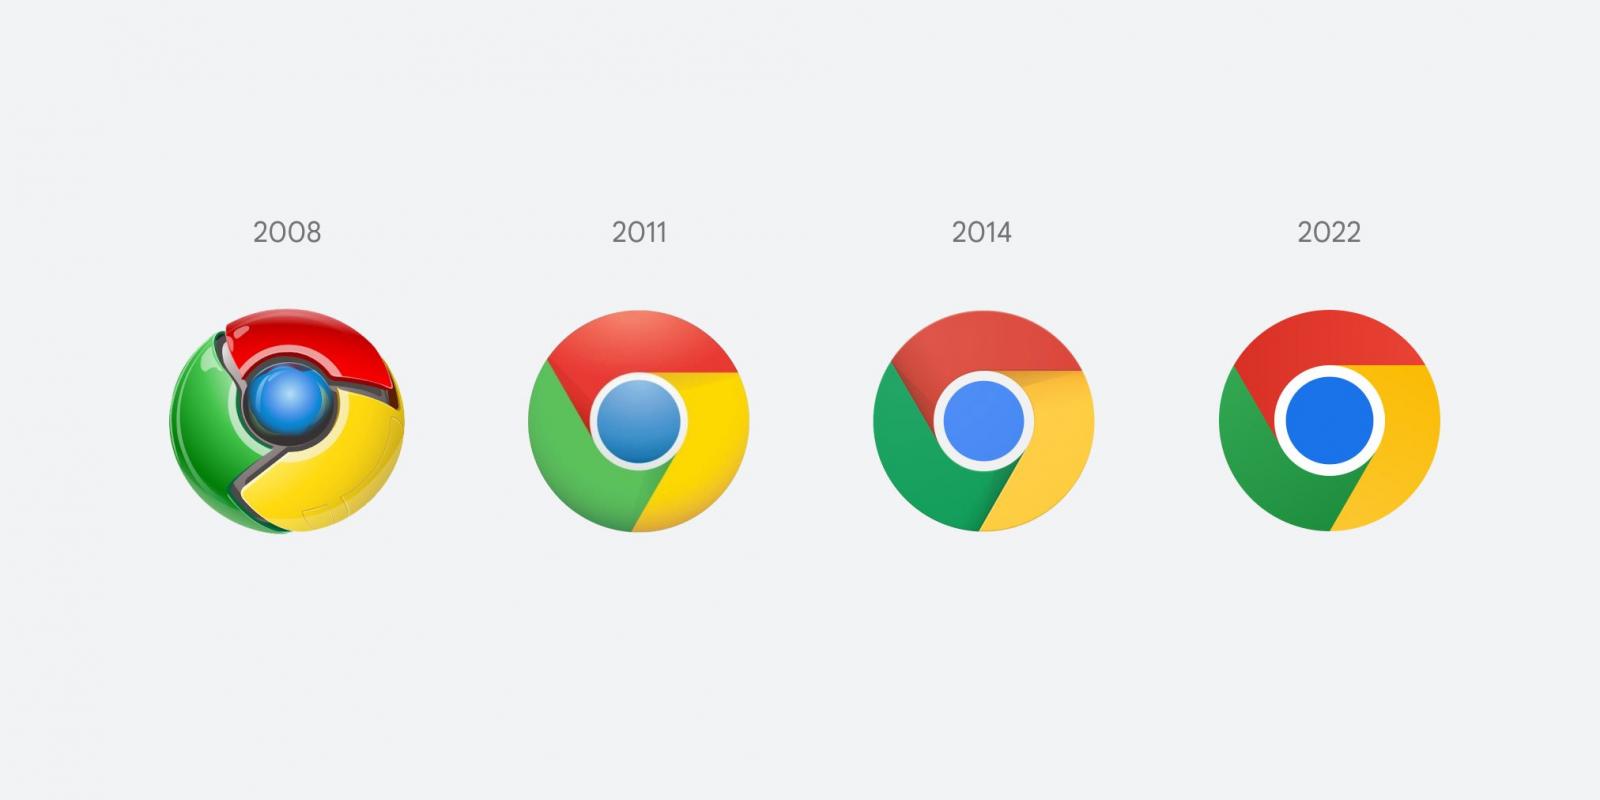 Chrome simgesi yıllar içinde değişir